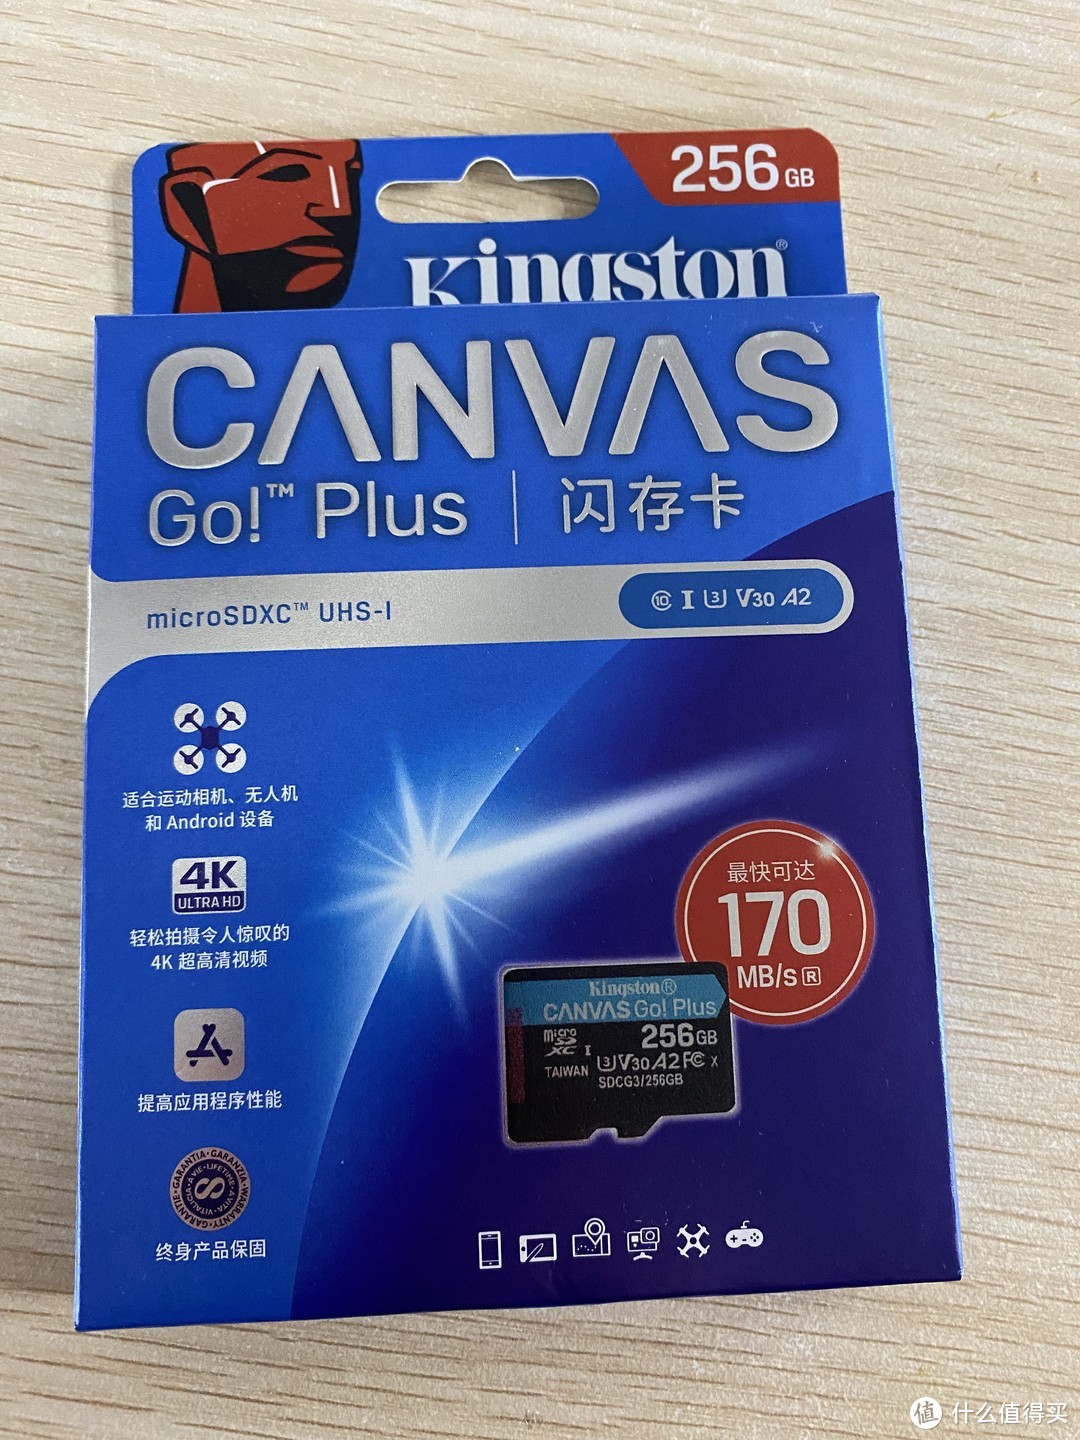 【老设备升级计划】用金士顿CANVAS Go Plus 256G内存卡给Surface Pro 4 扩容&简单体验